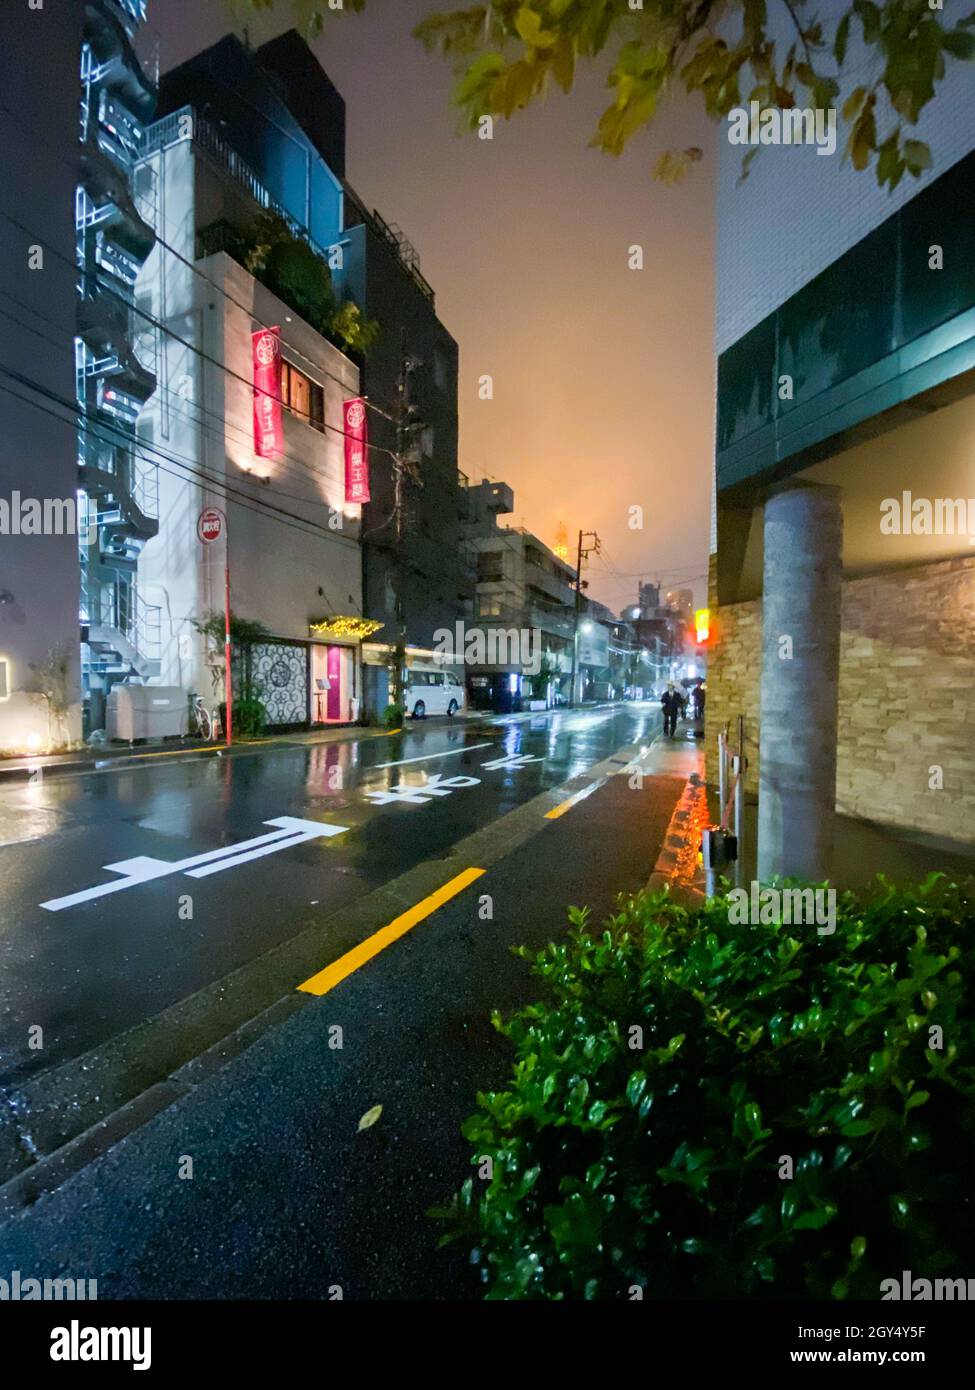 Tokio, Japan - 17. November 2019: Nächtliche Regentenszene auf der Straße von Tokio Stockfoto